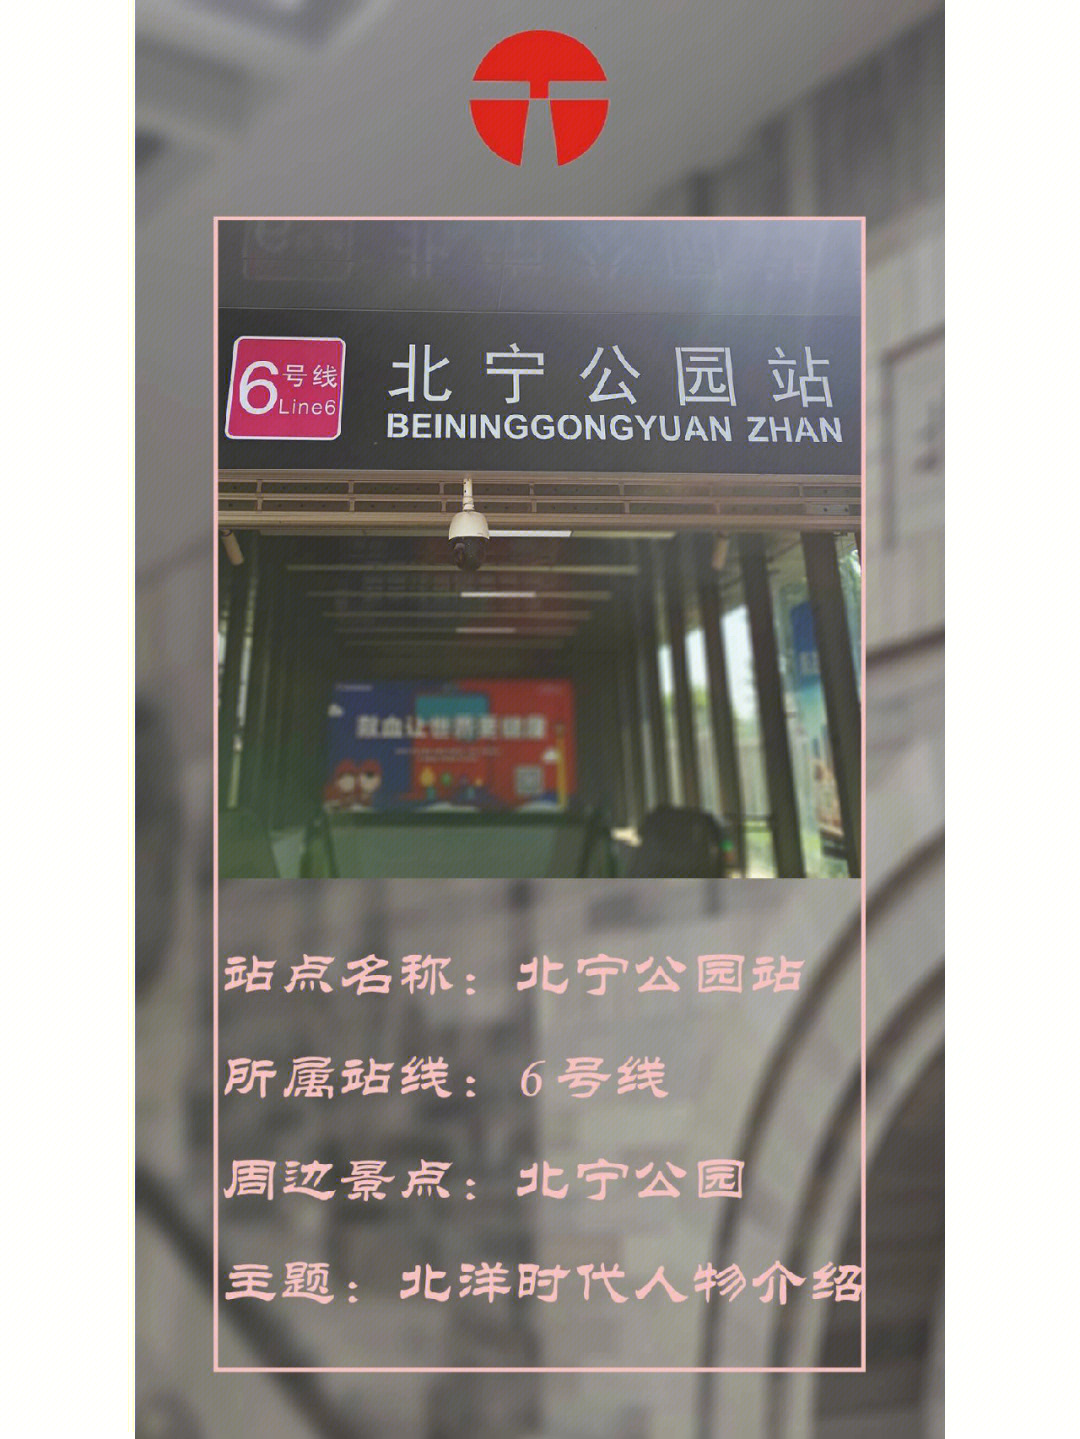 移动的博物馆天津地铁站北宁公园站